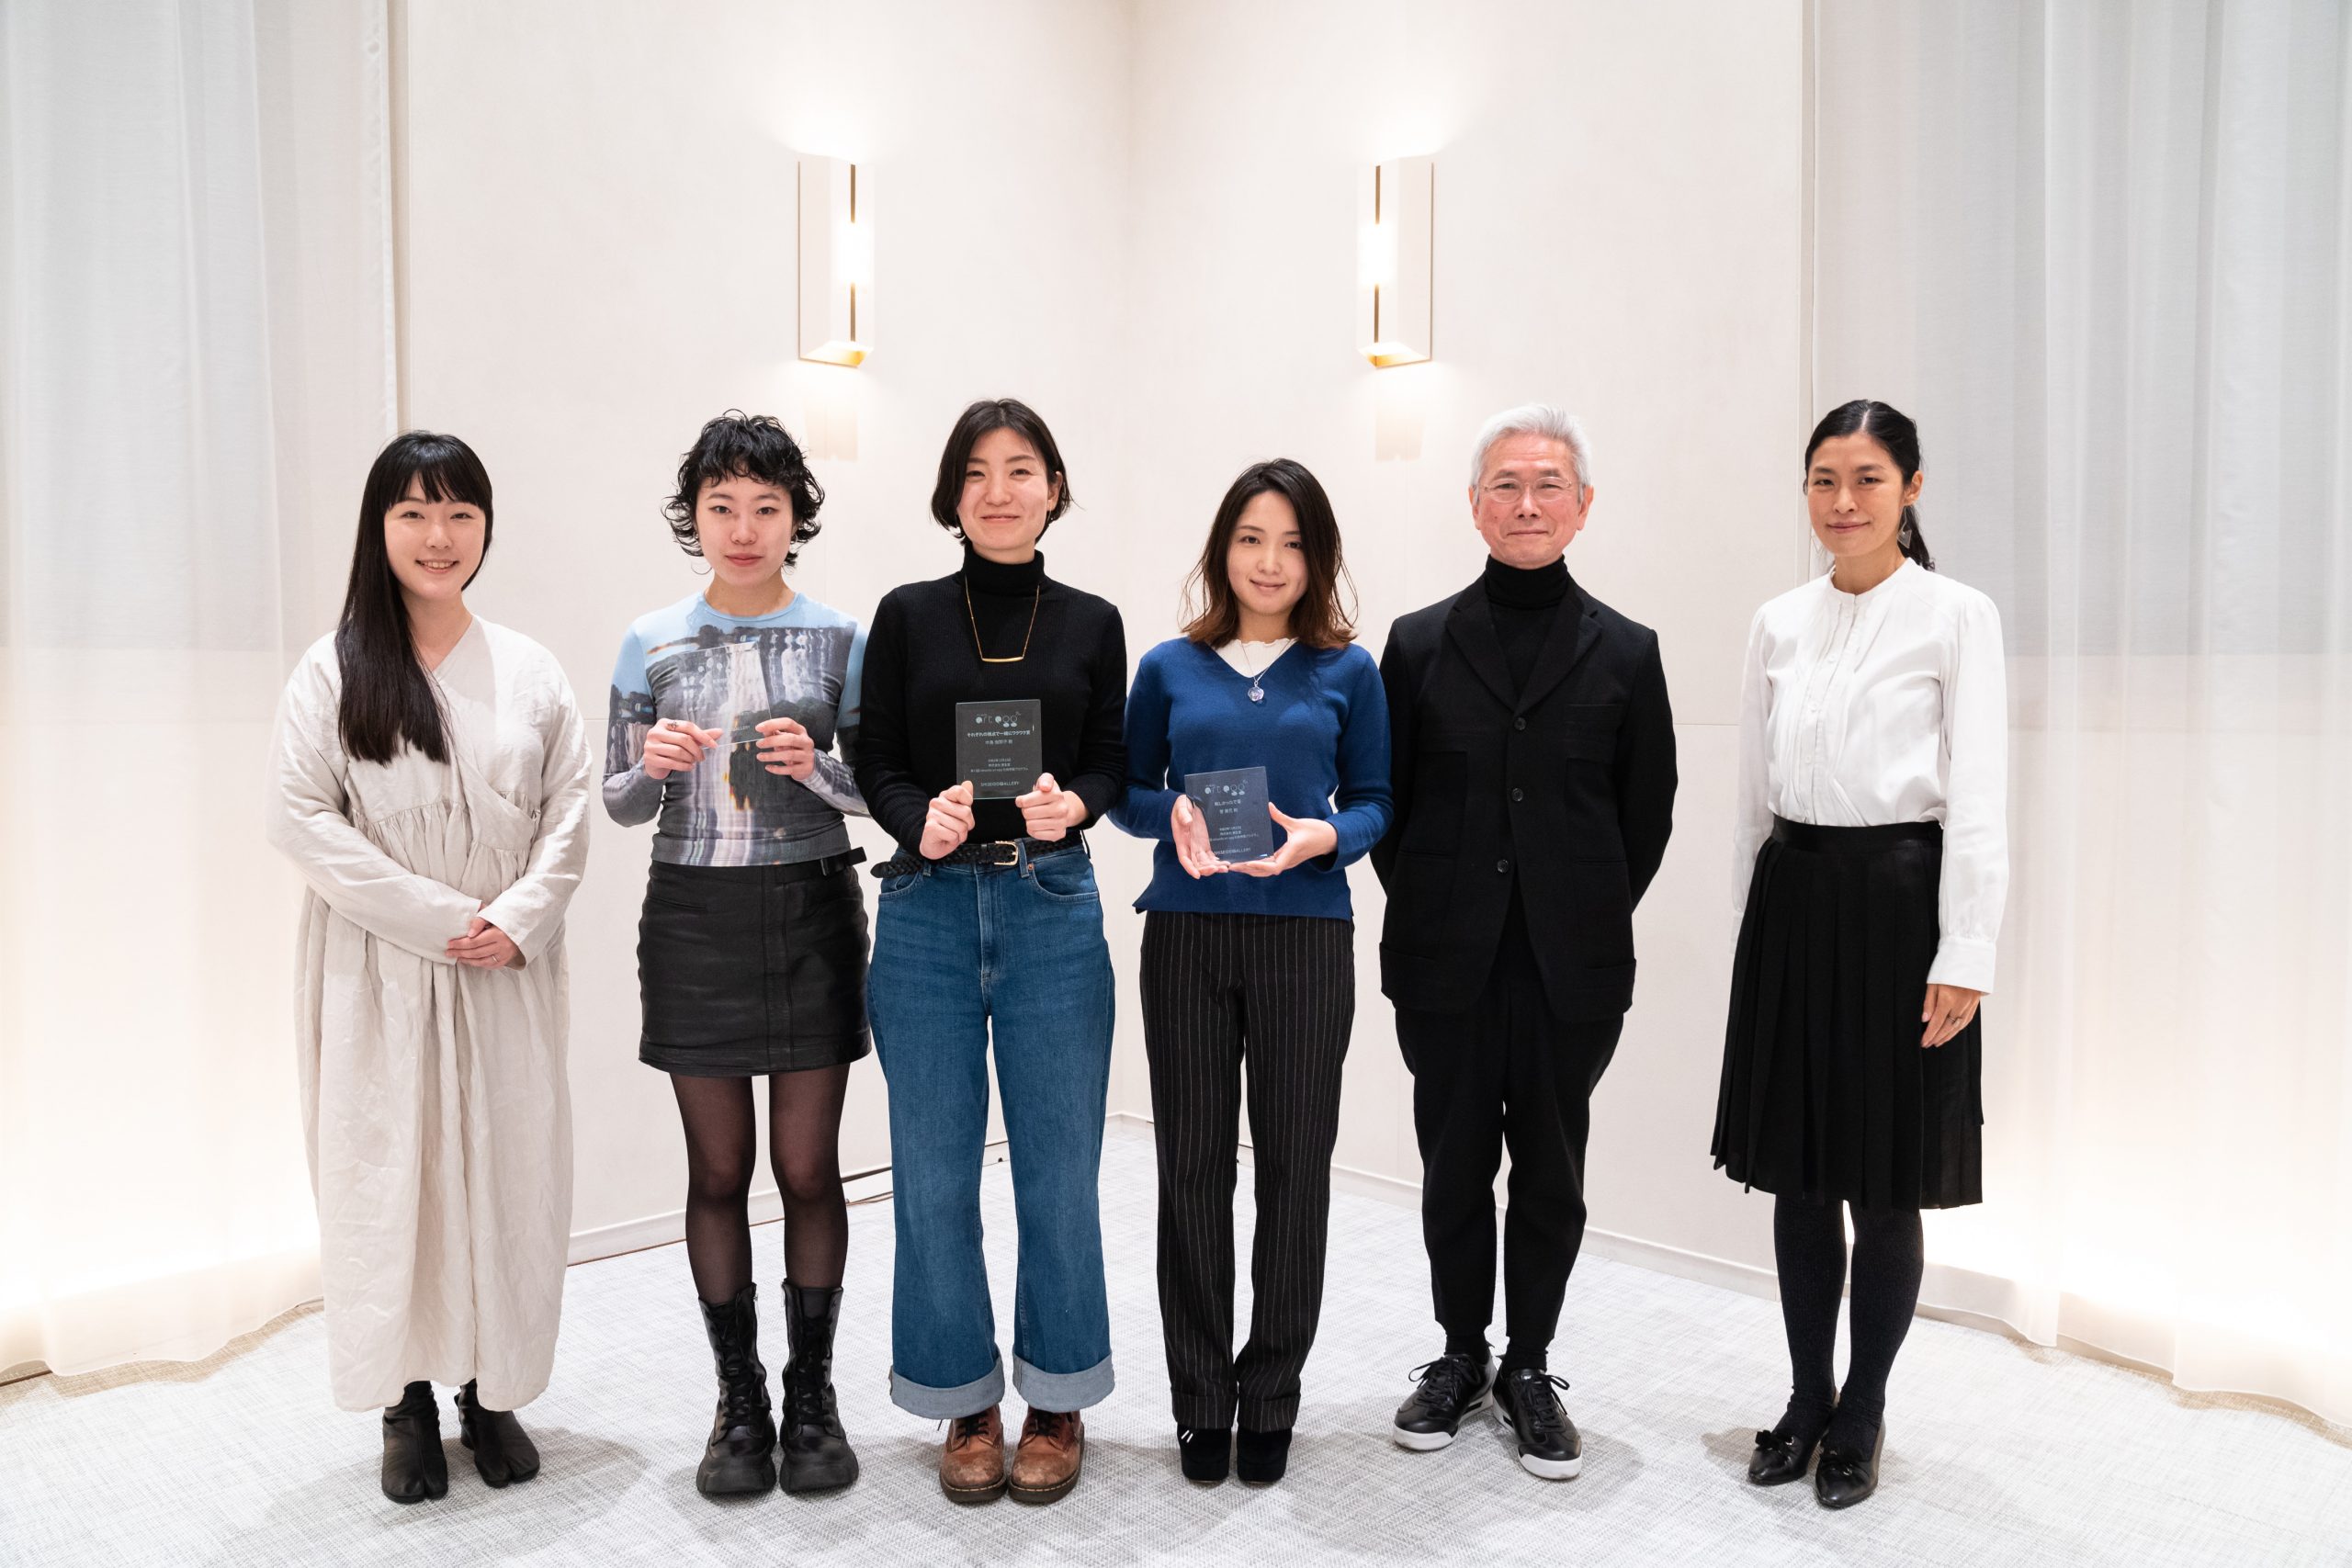 「第15回shiseido art egg賞」授賞式の様子。左から小田原氏、石原氏、中島氏、菅氏、金沢氏、小林氏